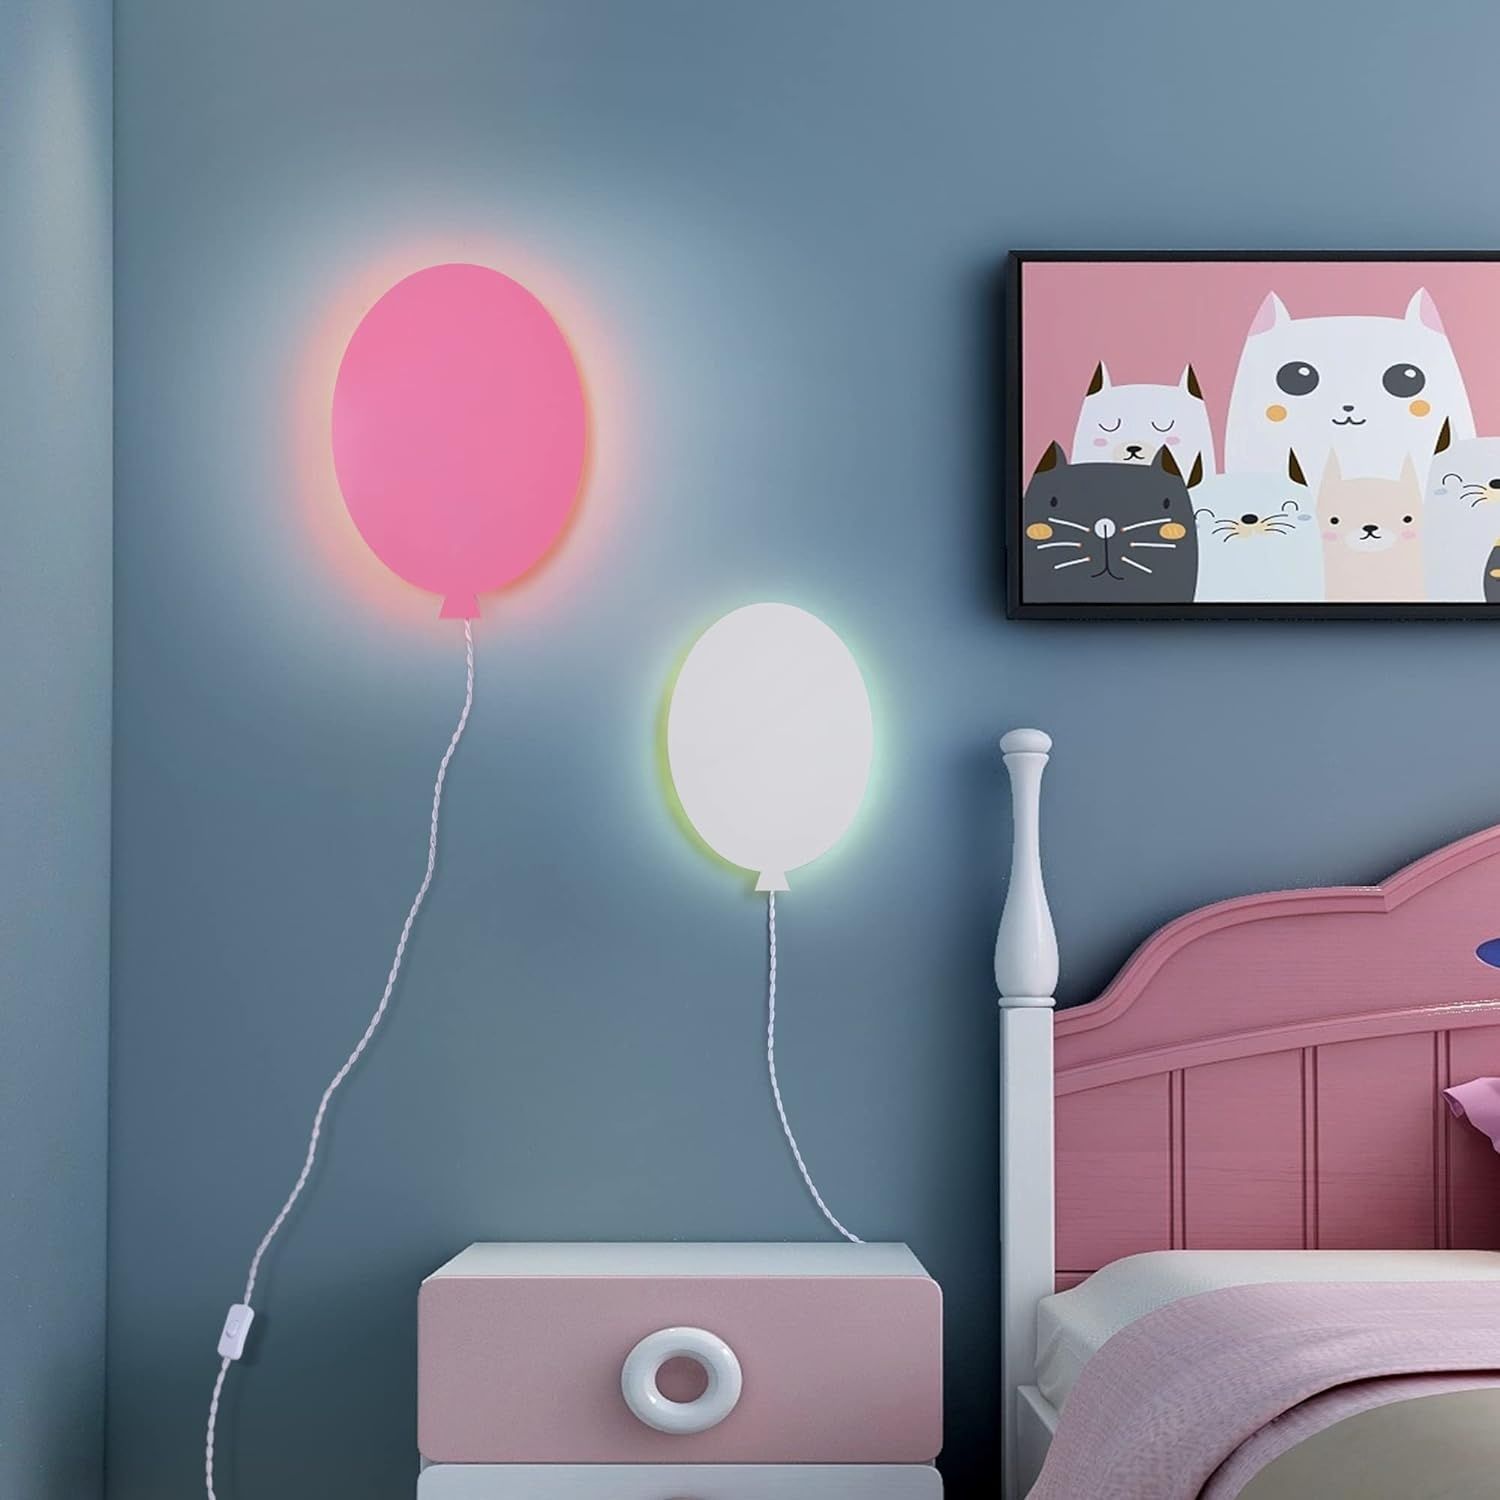 Lampa do pokoju dziecięcego, lampa ścienna LED RGB w kolorze białym